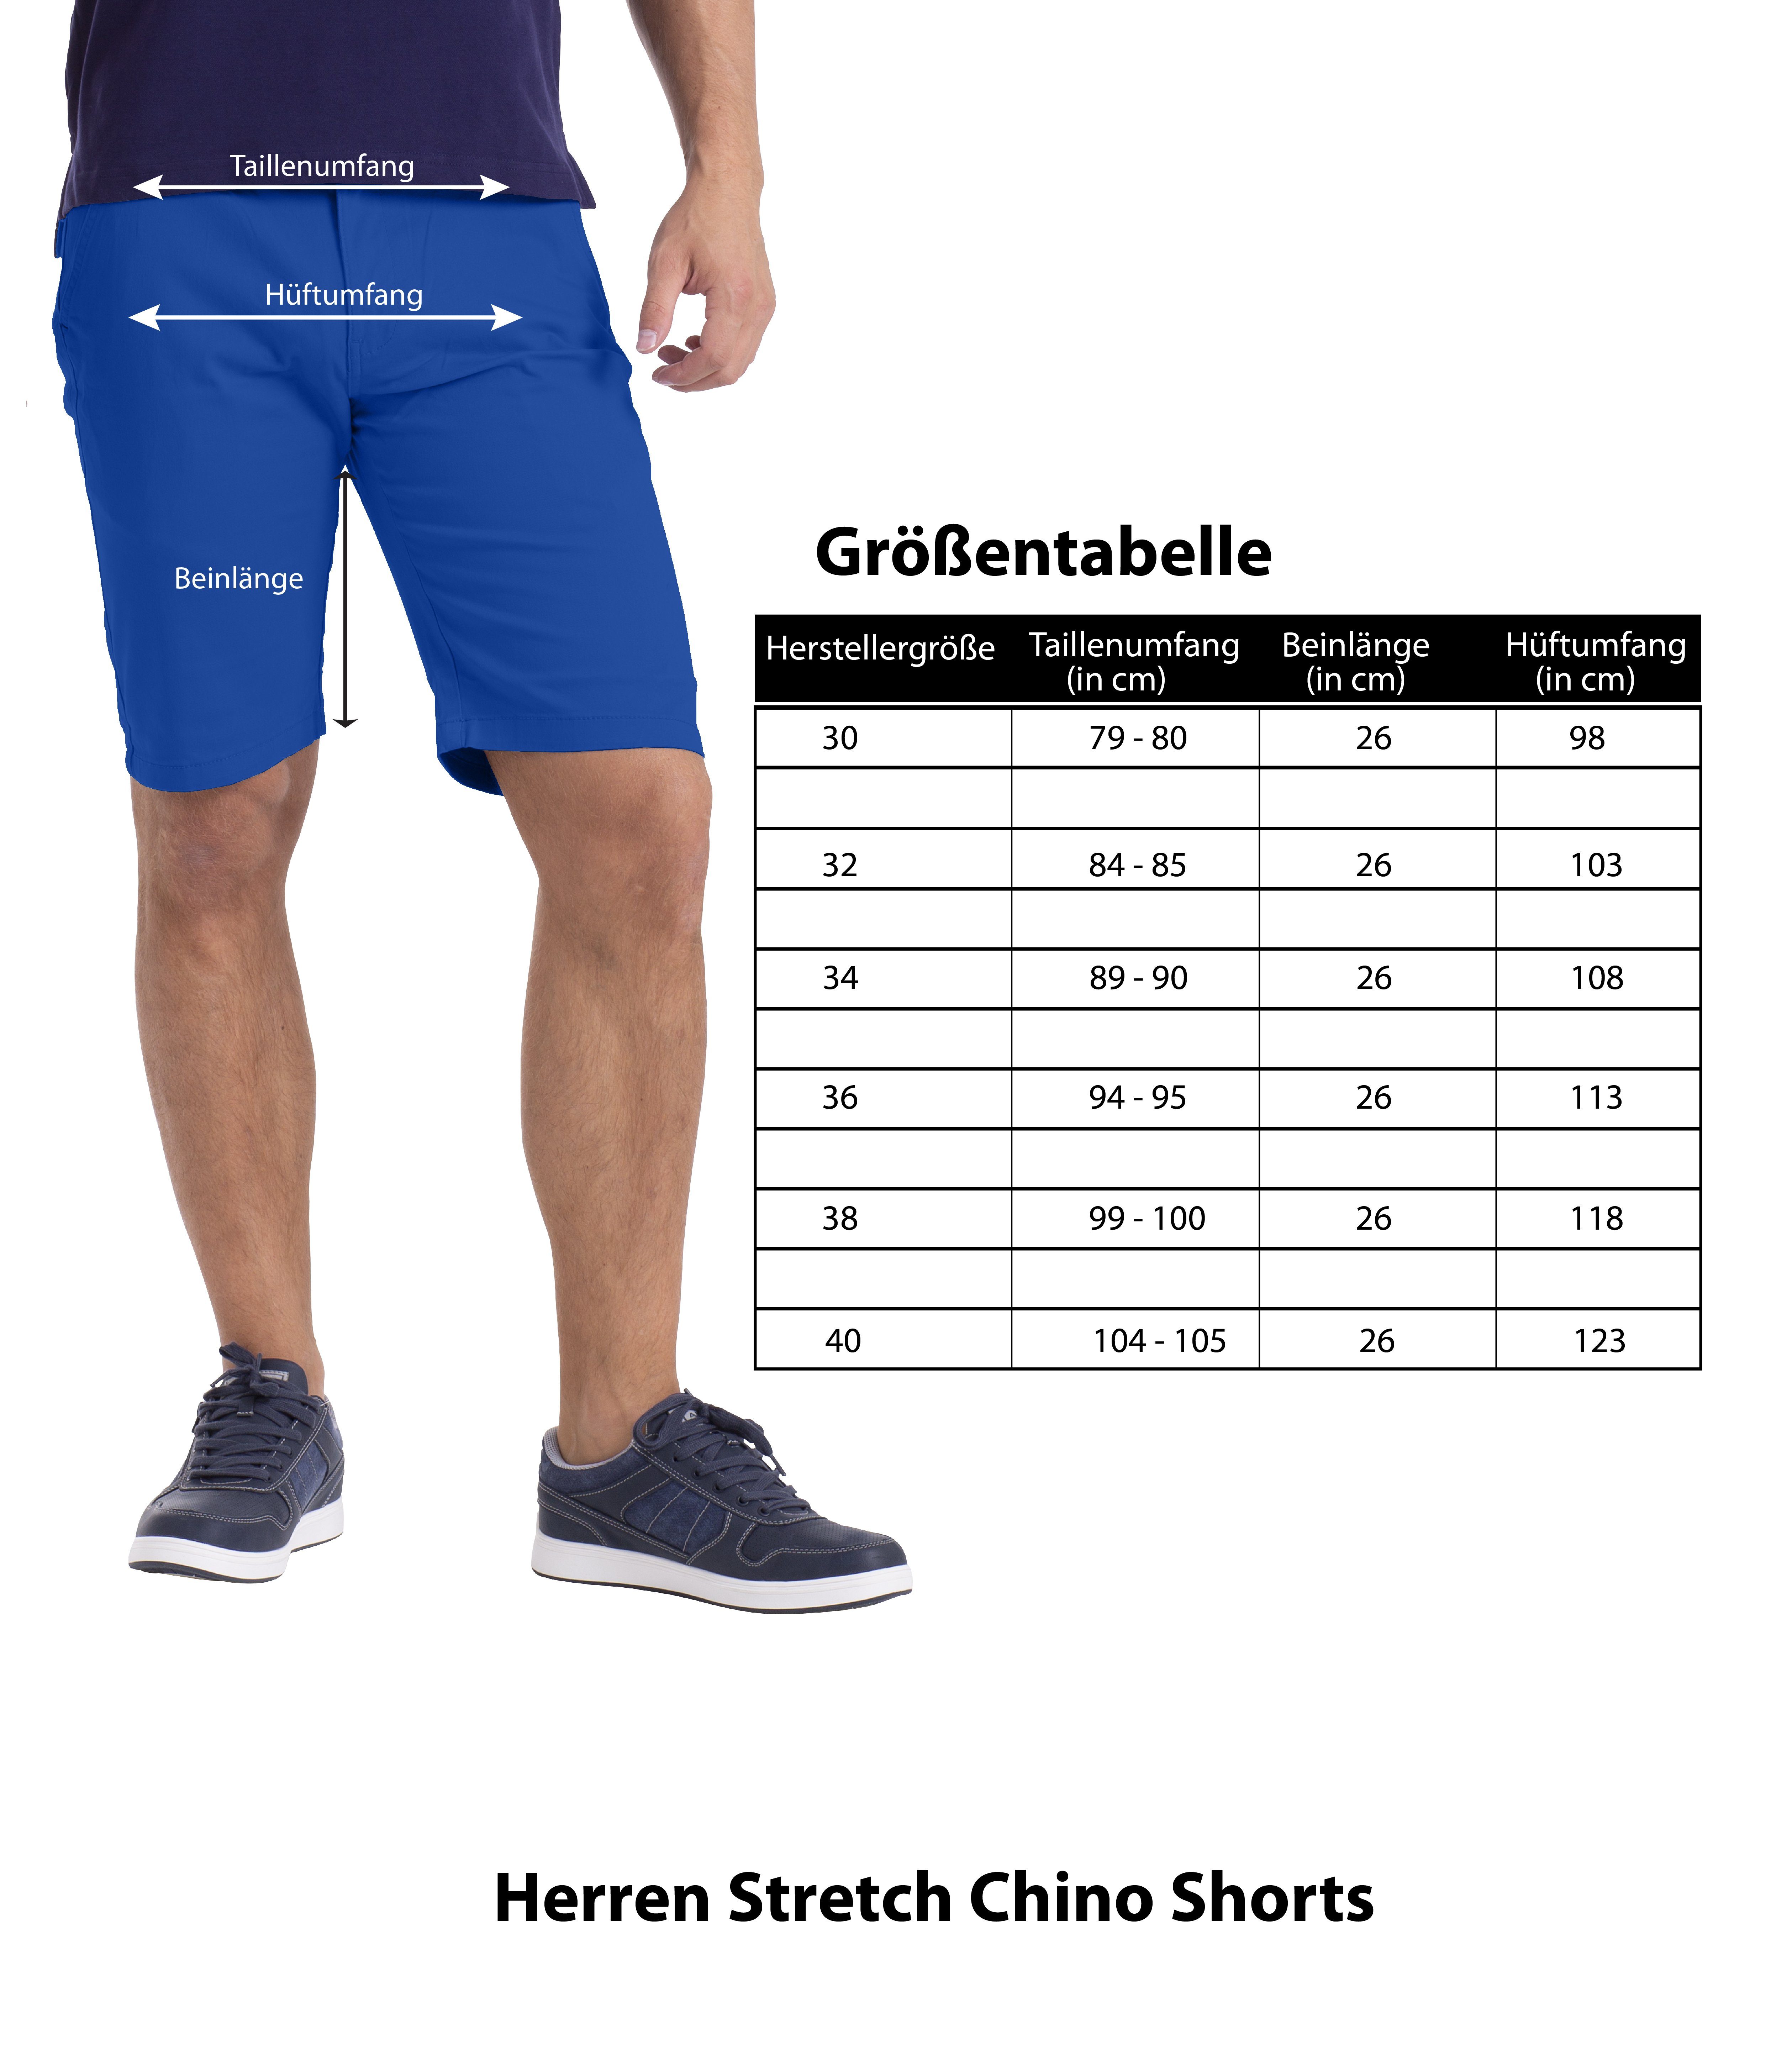 BlauerHafen Chinoshorts Herren Stretch Chino Slim Königsblau Bermuda Fit Shorts Hose Strecken-Baumwolle